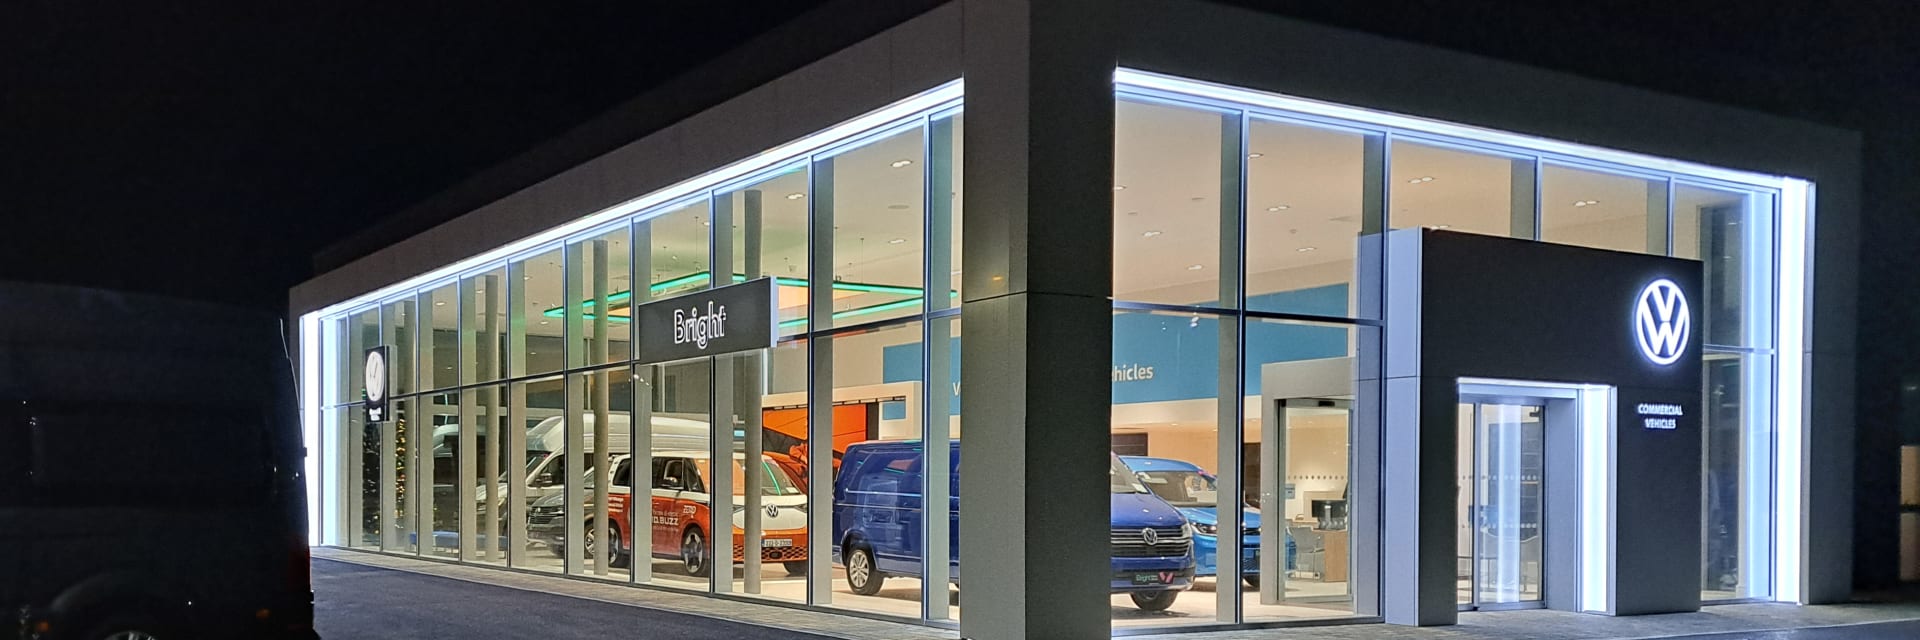 New Volkswagen Commercials showroom now open